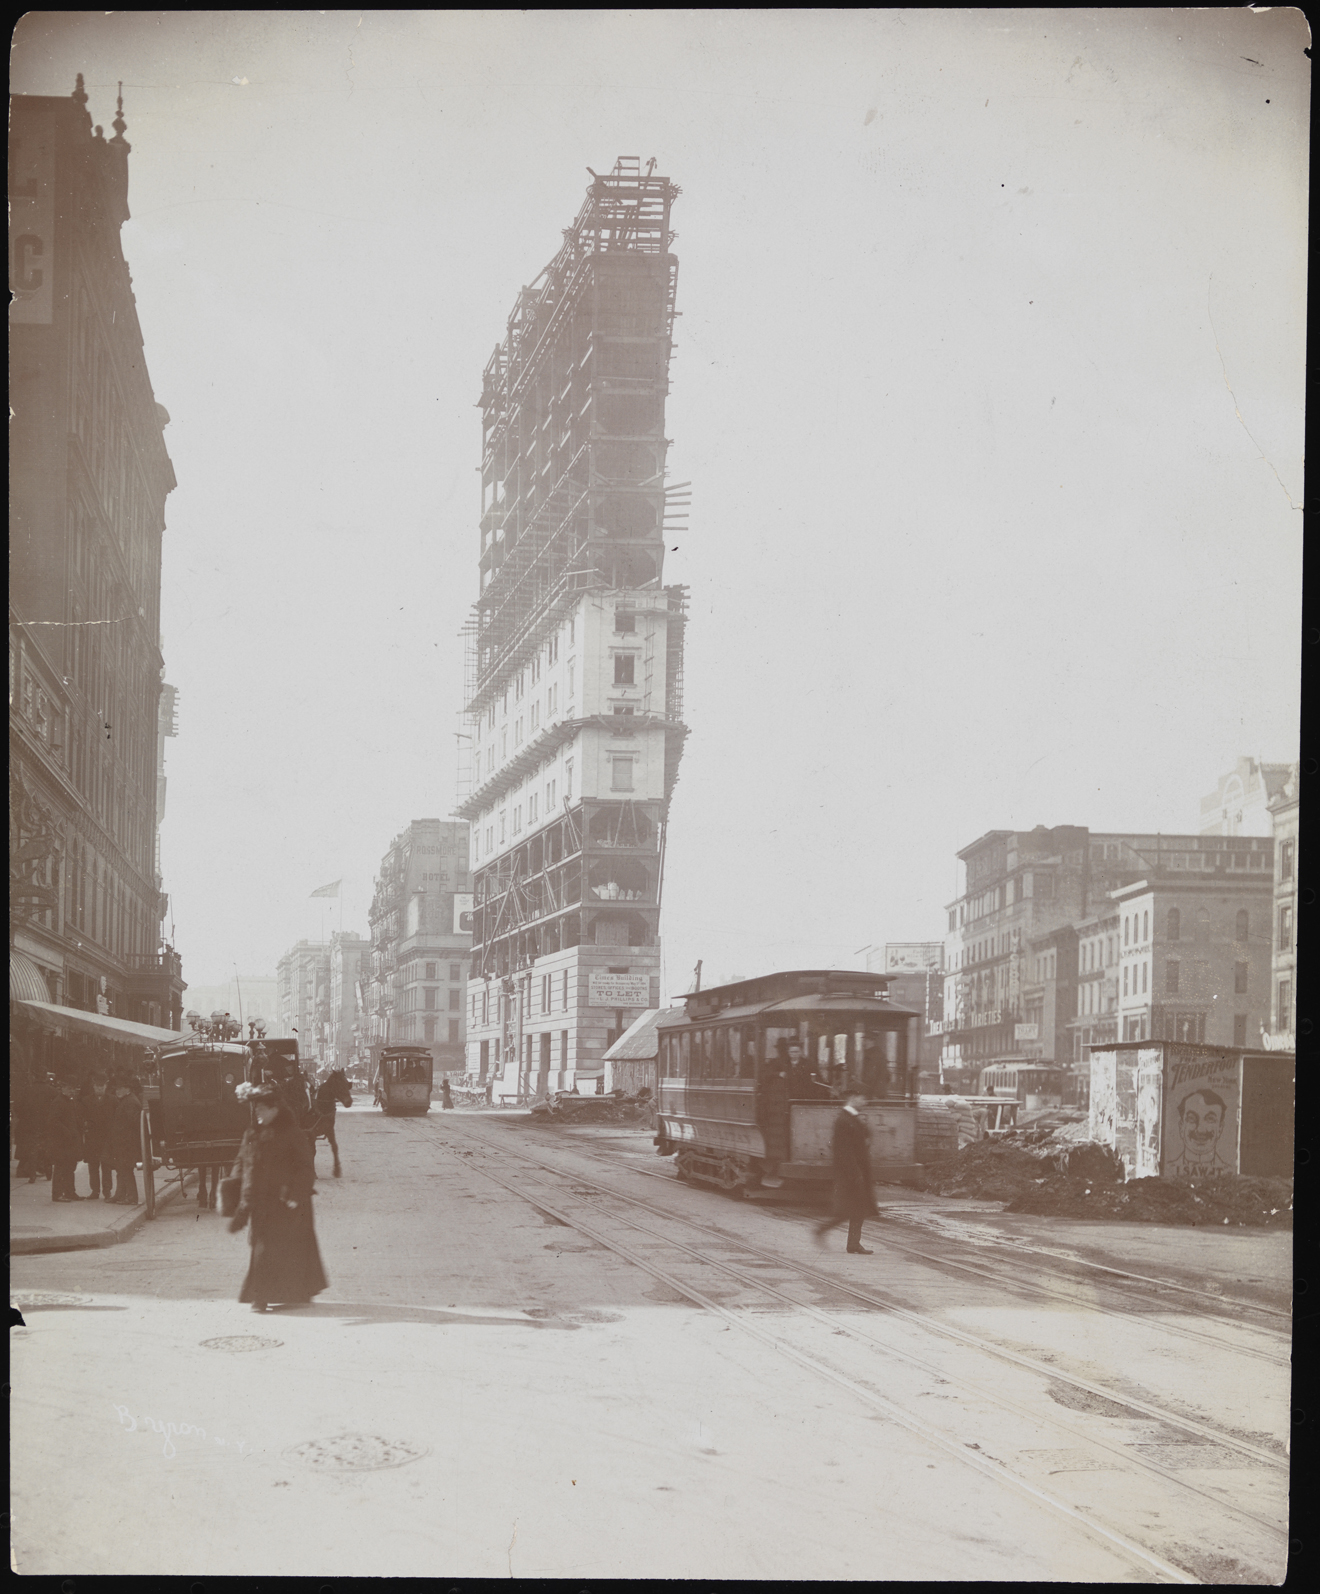 바이런 회사. 건물, 건설중인 타임스 빌딩, ca. 1903. 뉴욕시 박물관. 93.1.1.16687